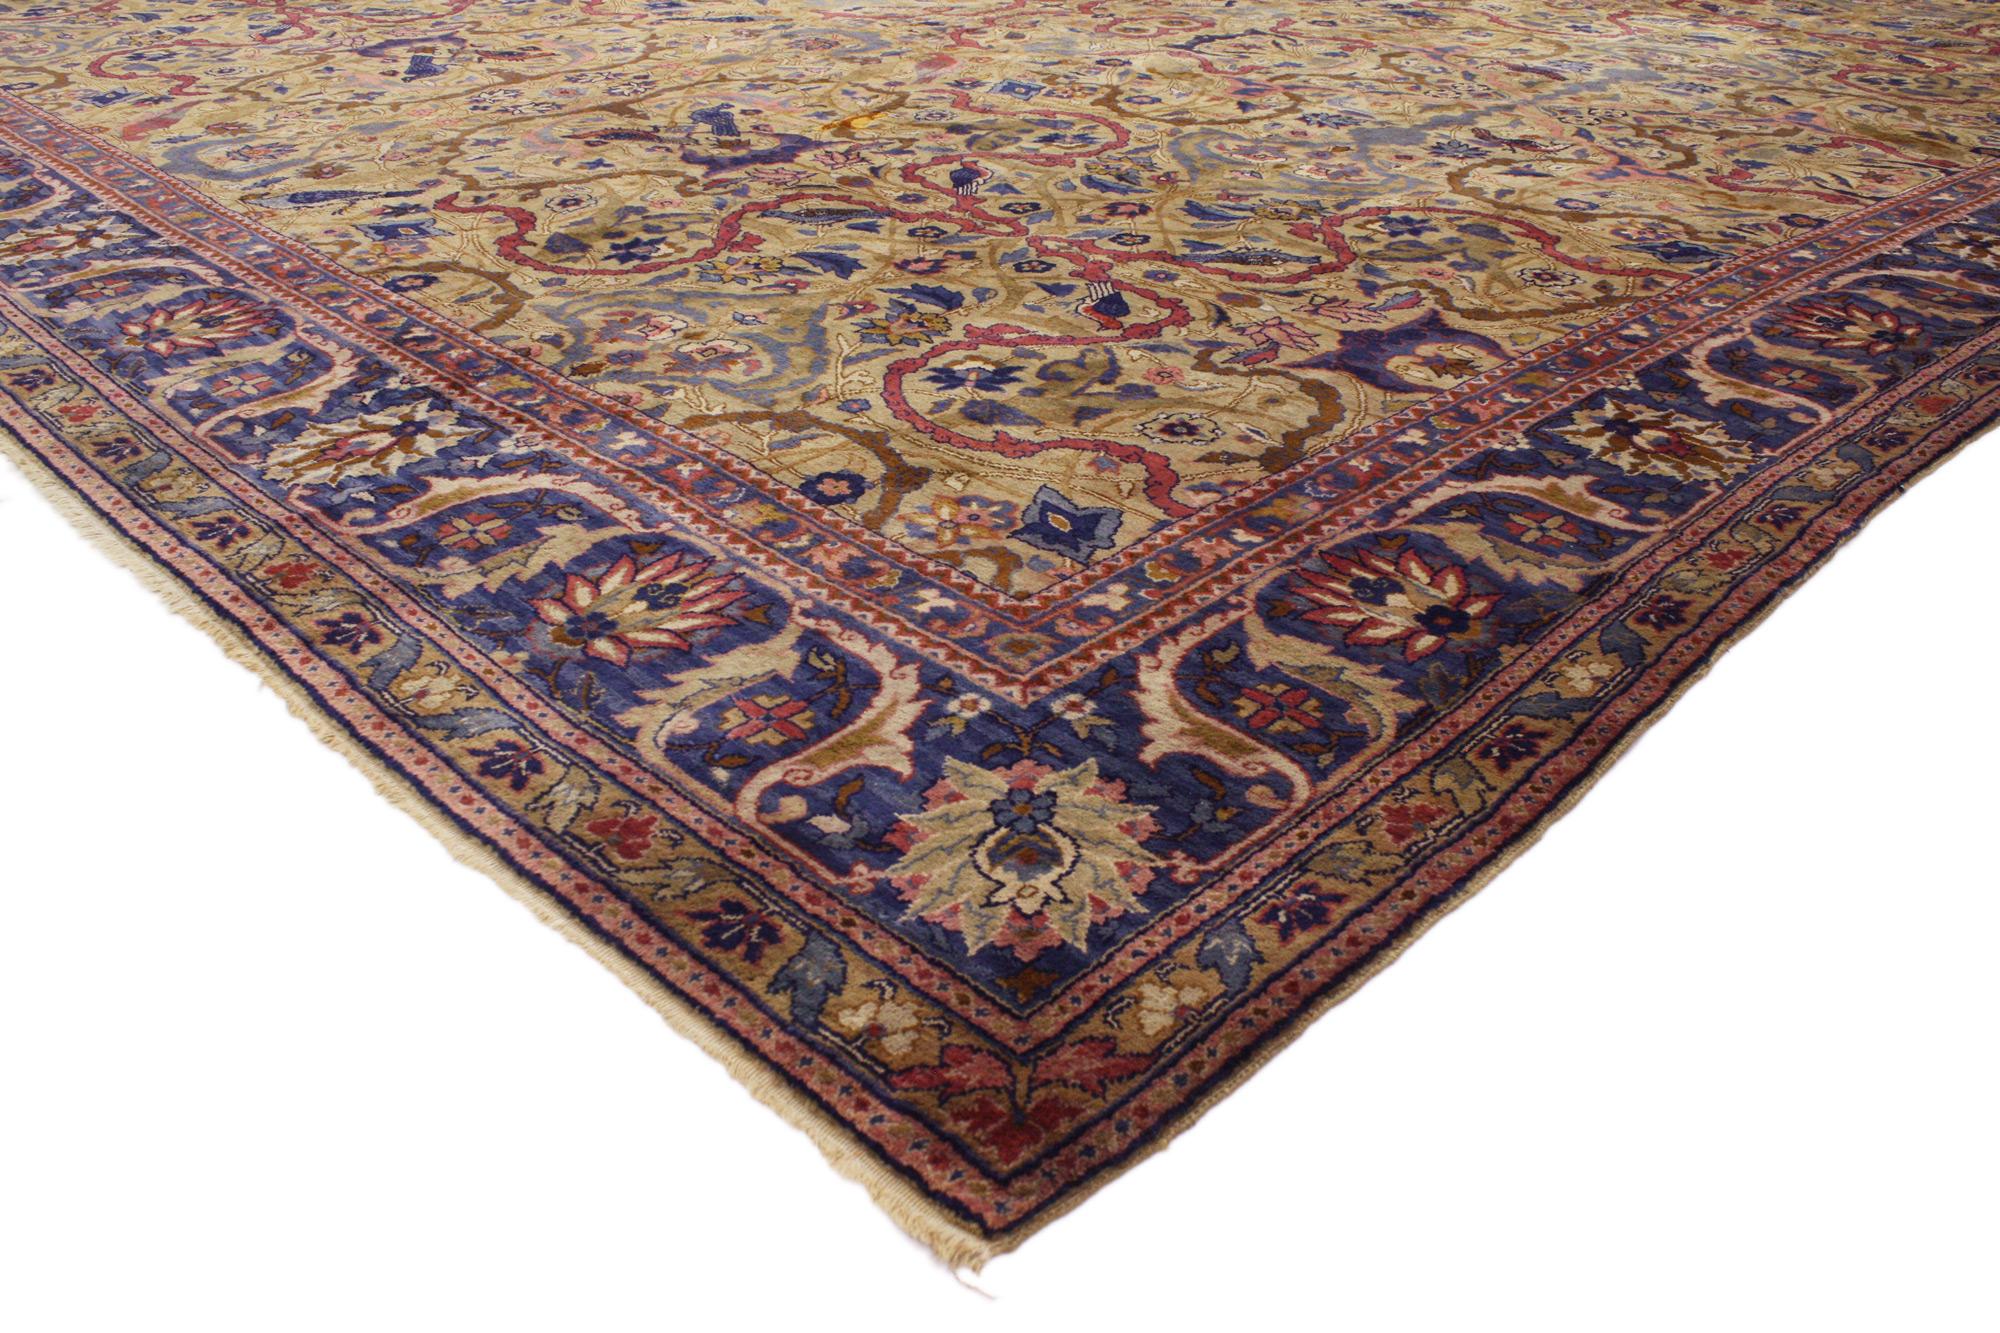 76918 Übergroßer antiker indischer Agra-Teppich, 23'00 x 23'07. 
Dieser handgeknüpfte, antike indische Agra-Teppich aus Wolle in Übergröße, der einen zeitlosen Stil mit unglaublichen Details und Texturen nachahmt, ist eine fesselnde Vision von